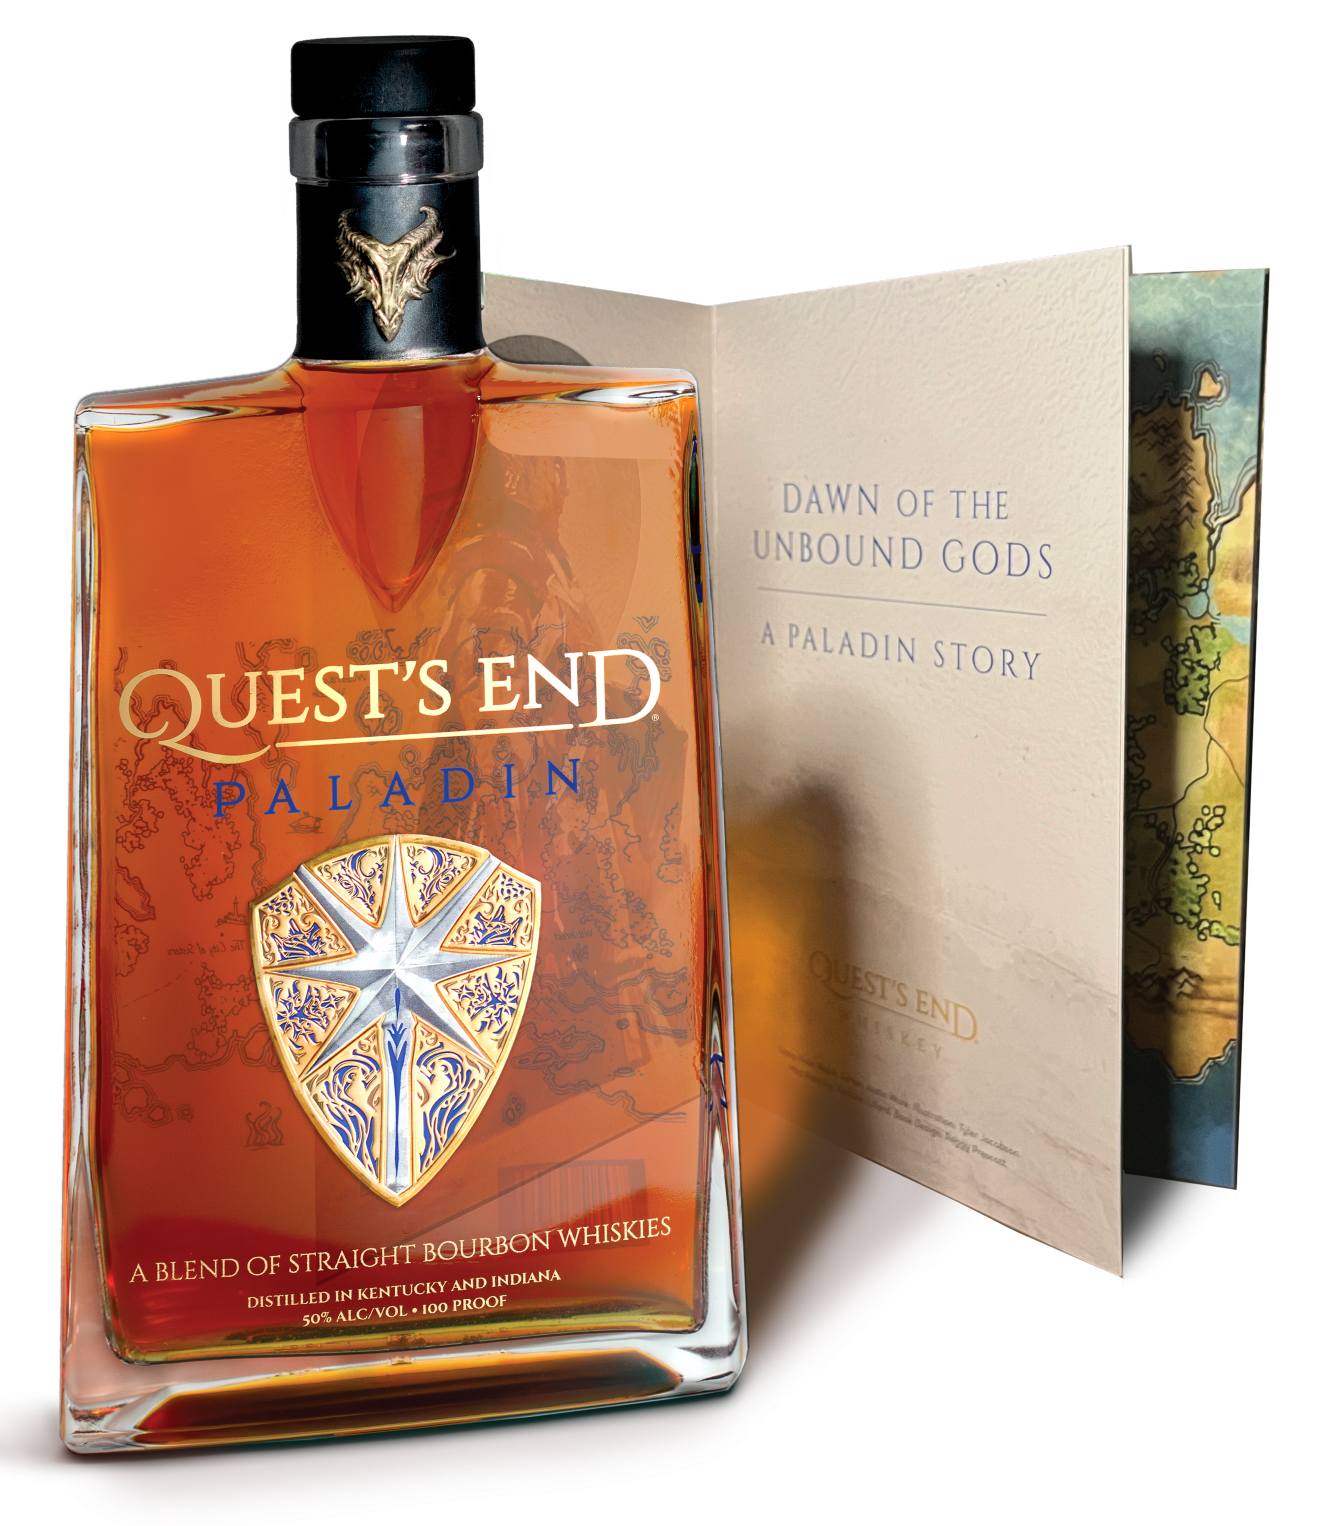 Quest's End Bottle & Book Paladin